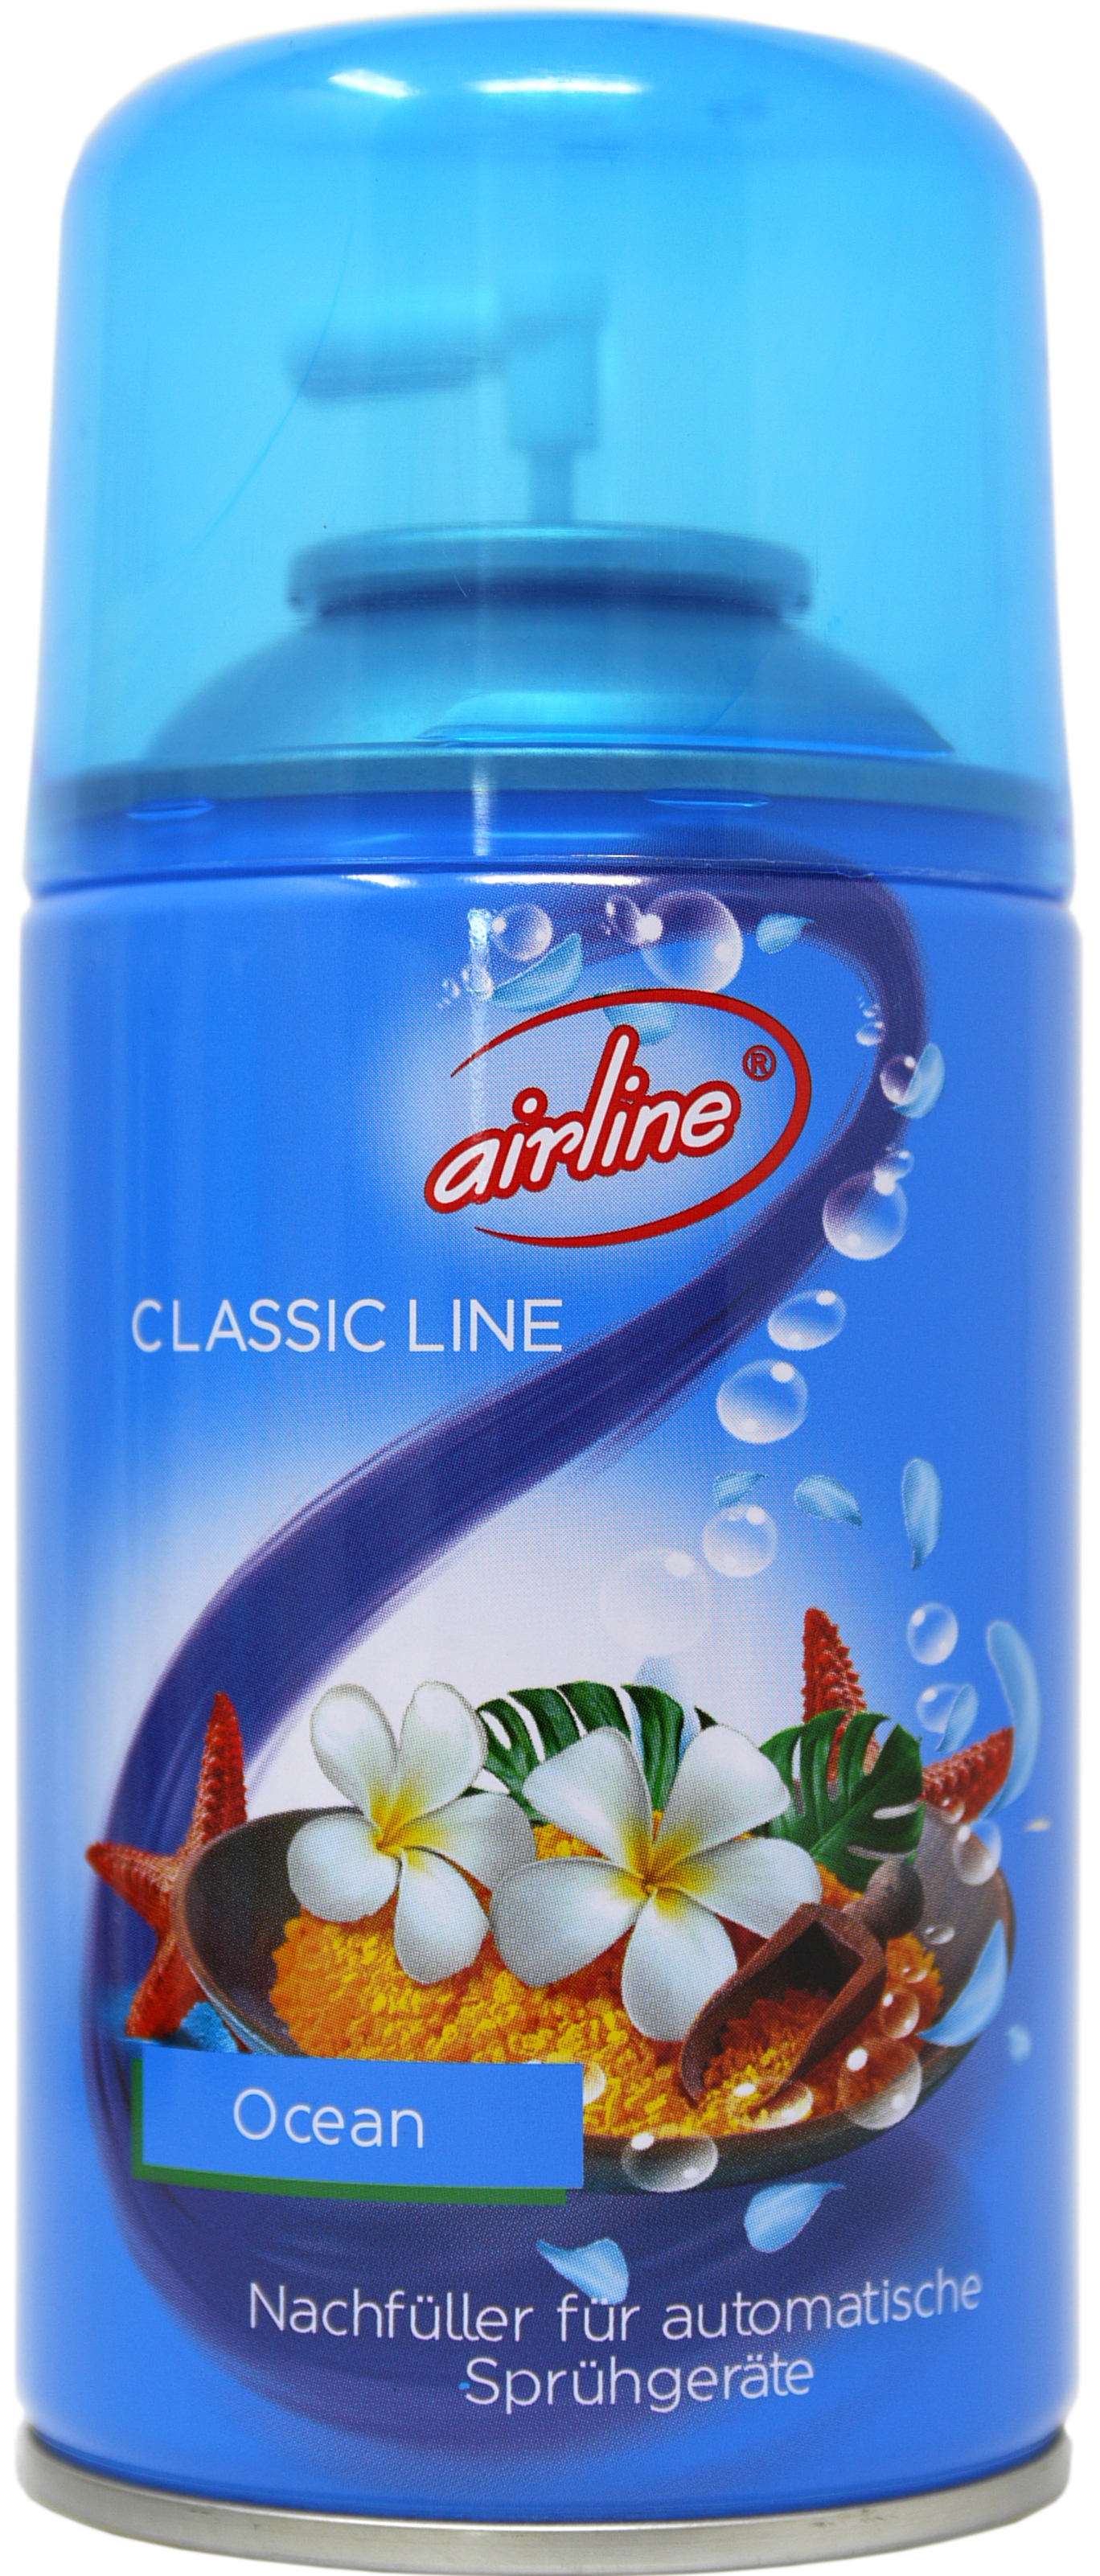 00506 - airline Classic Line Ocean Nachfüllkartusche 250 ml